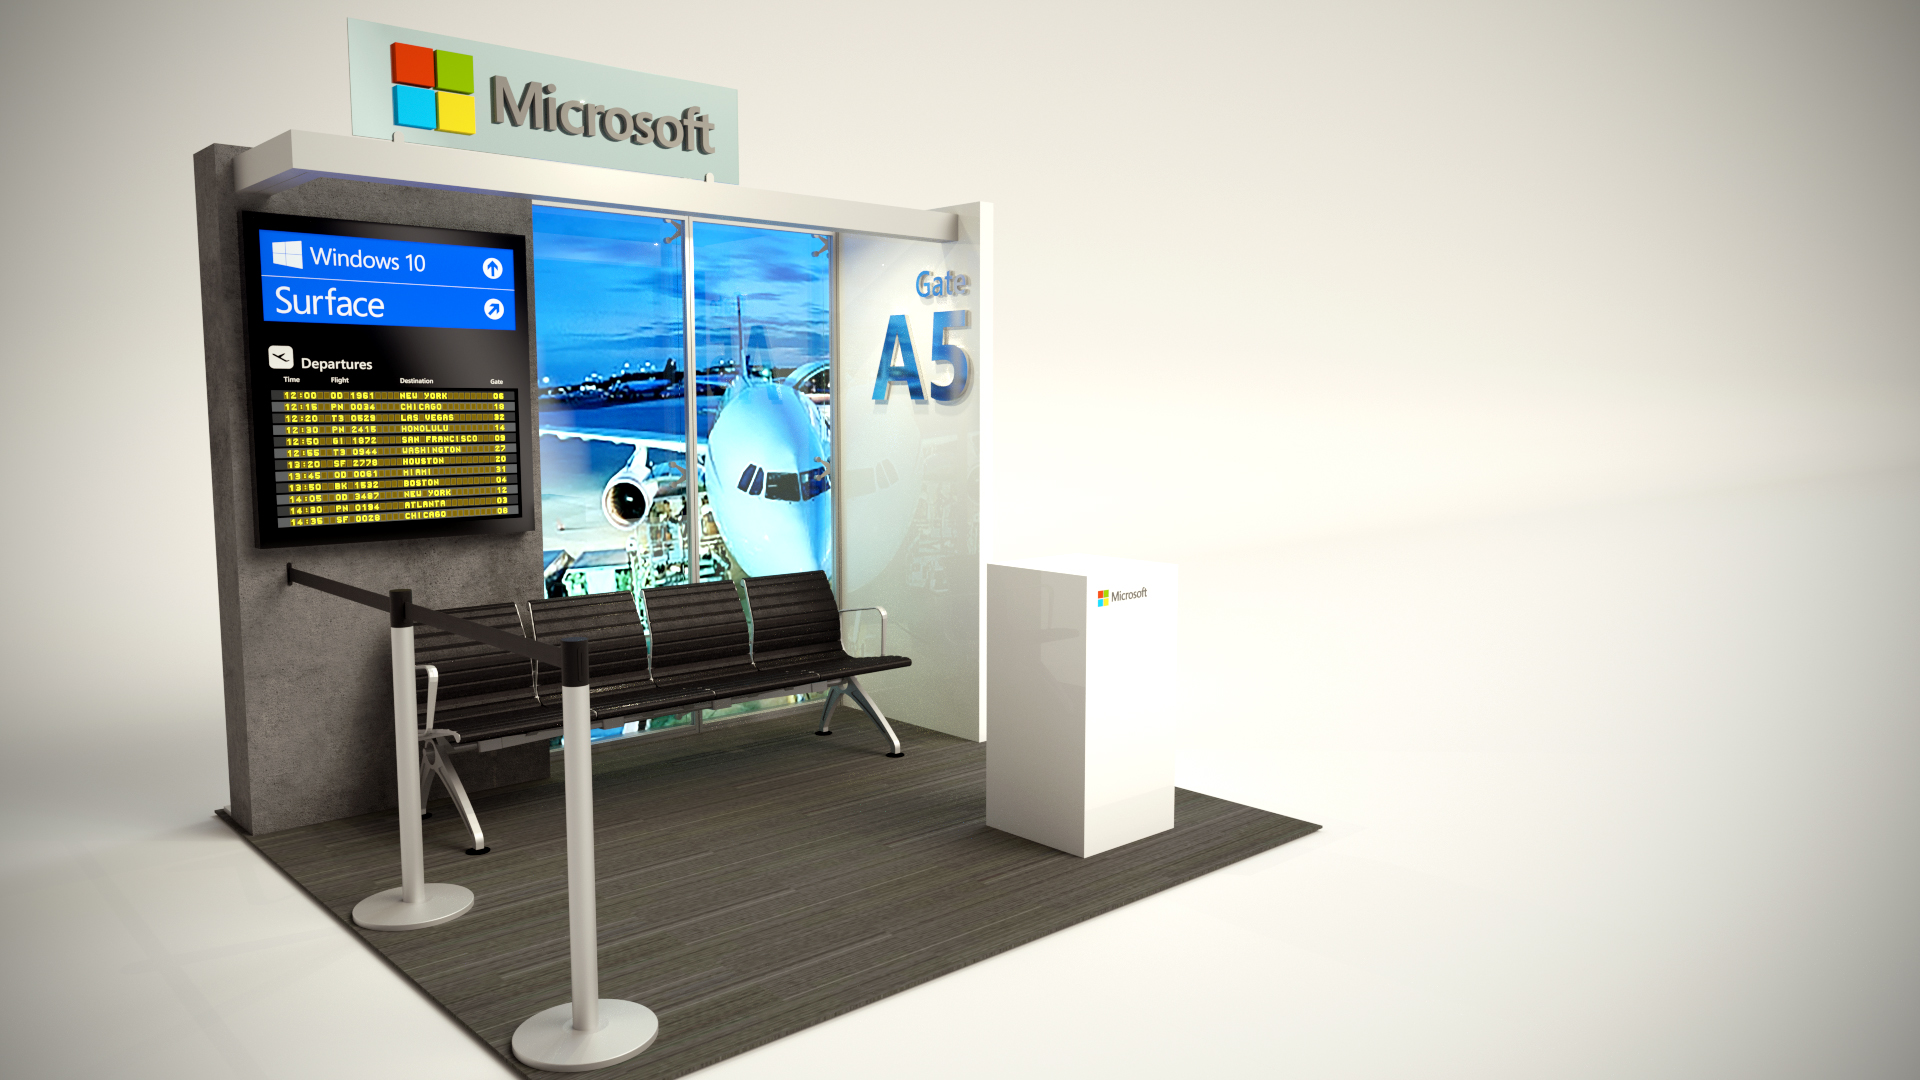 2886 - Microsoft - Staples Canada Vendor Show 2015 (10' Airport) REV 1.jpg